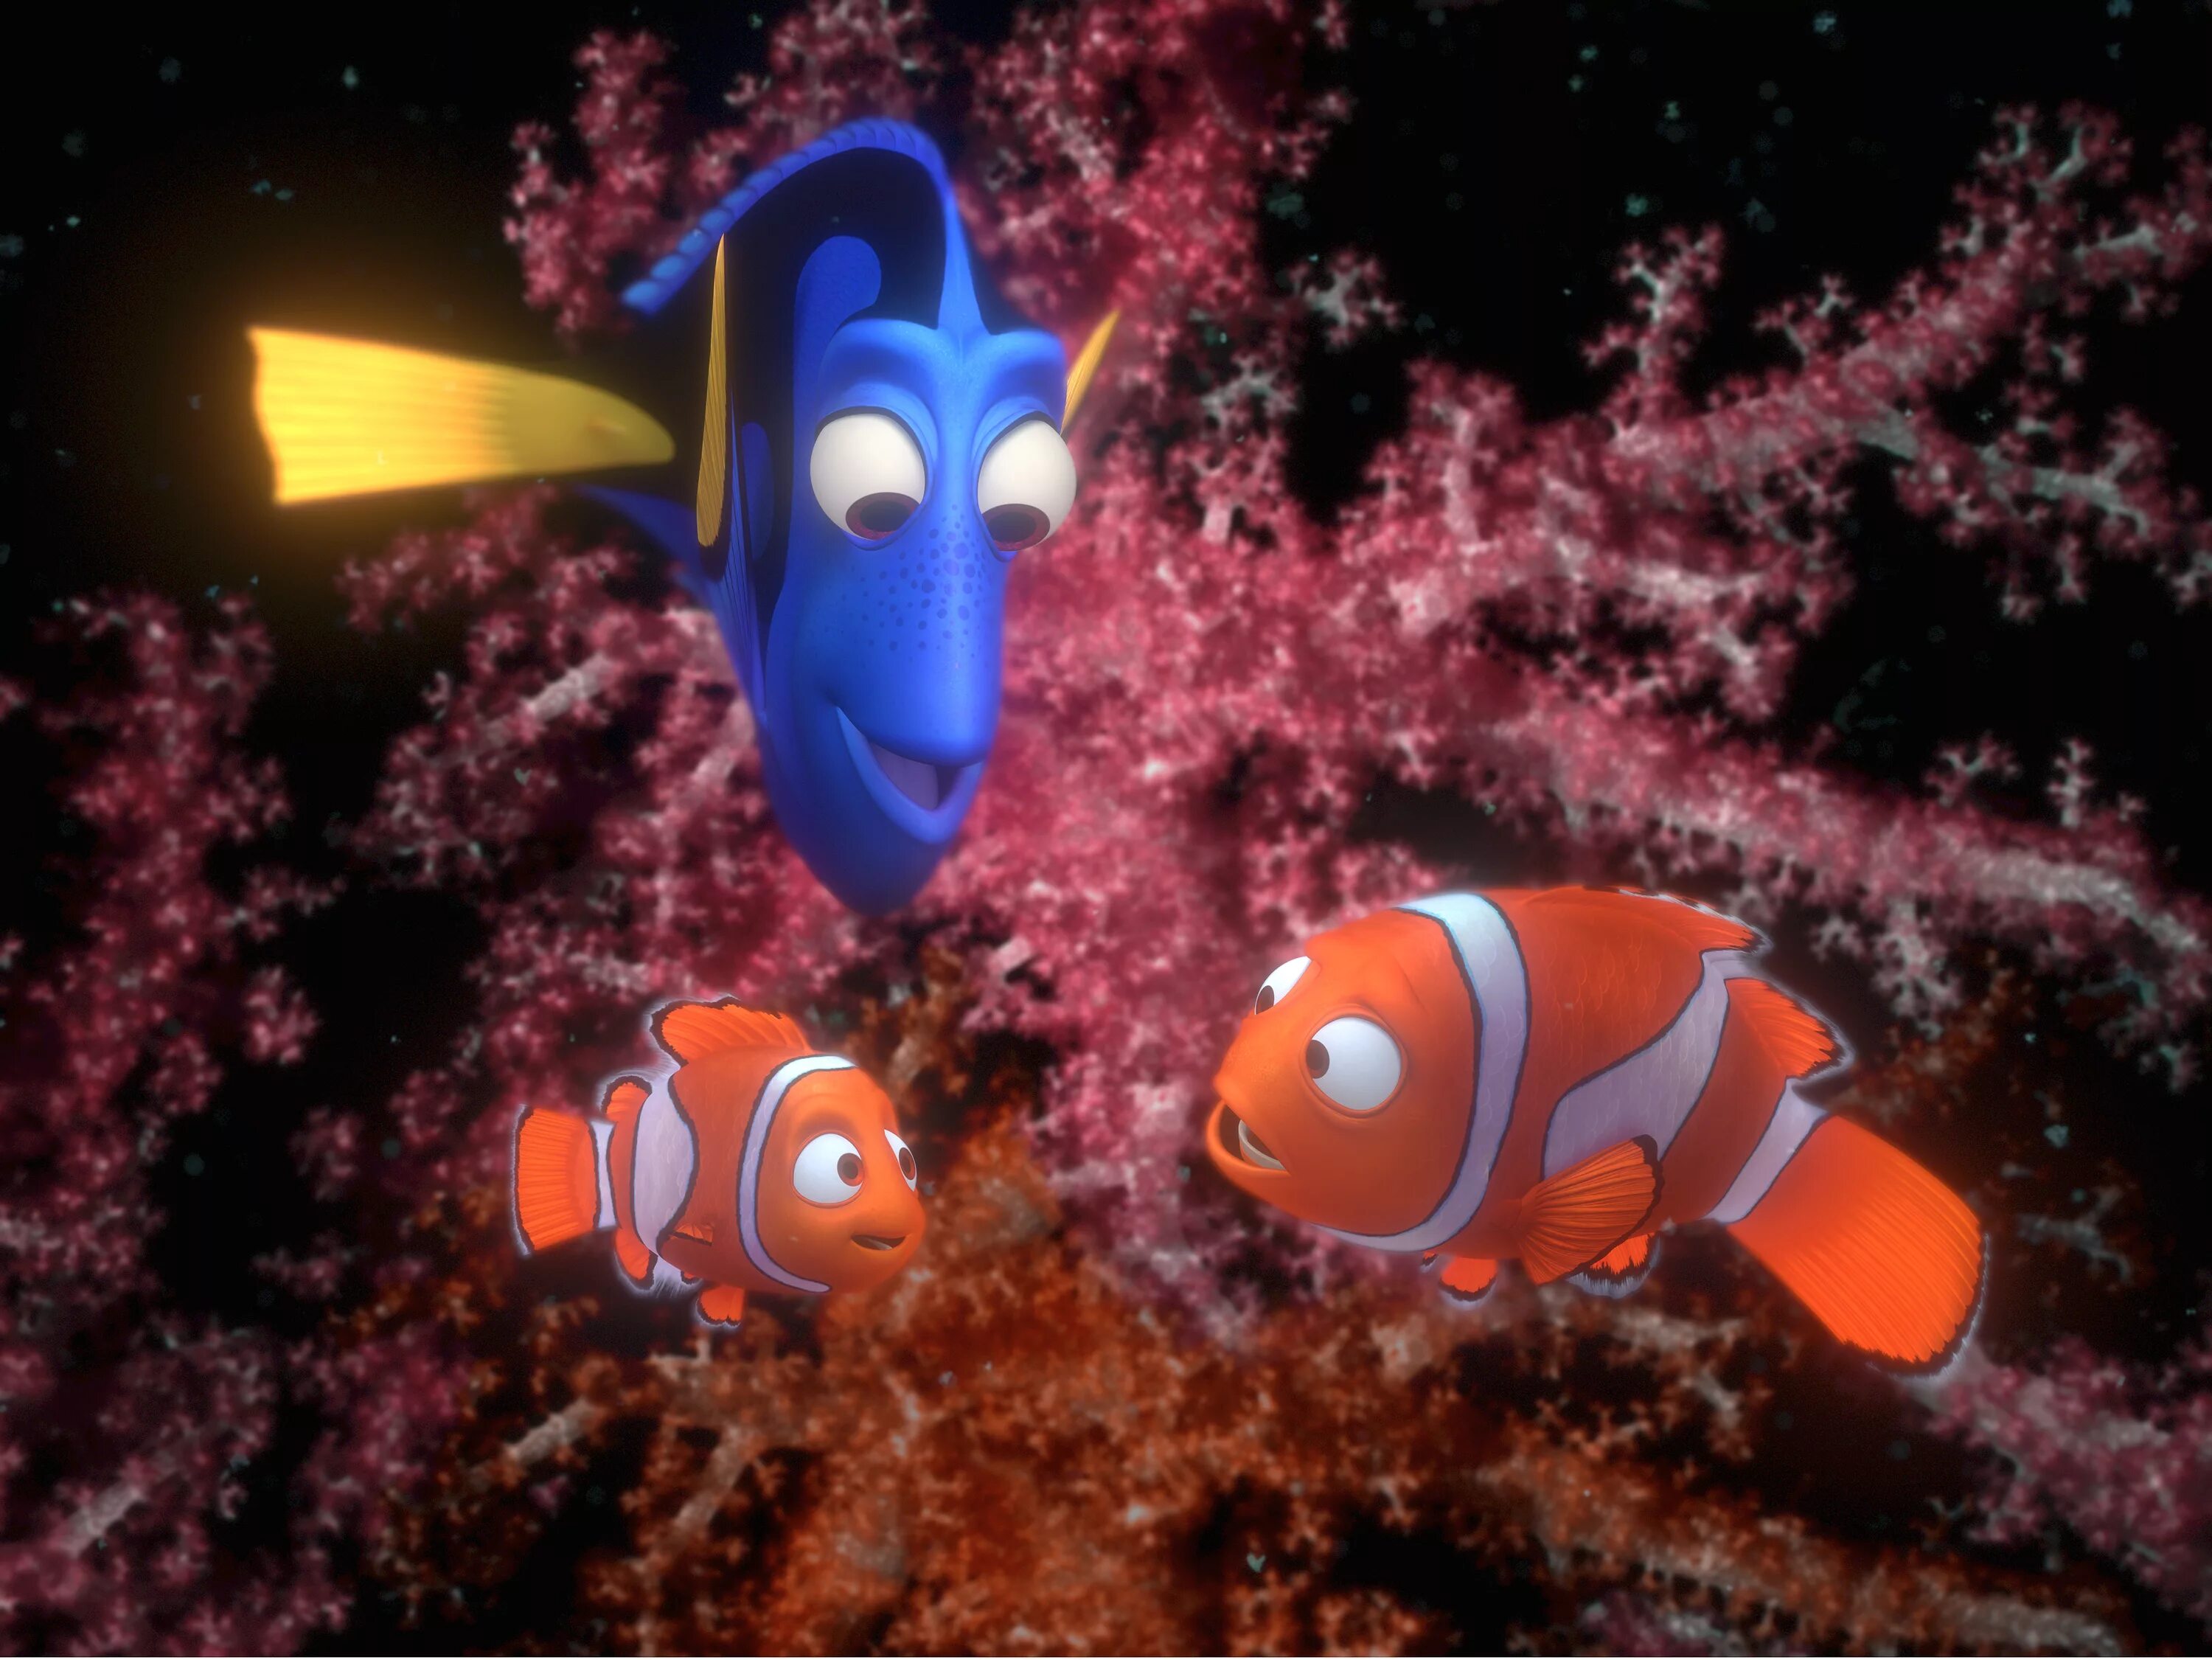 Finding Nemo 2003. Nemo Dory. Marlin and Dory. Марлин из Немо. В пои немо